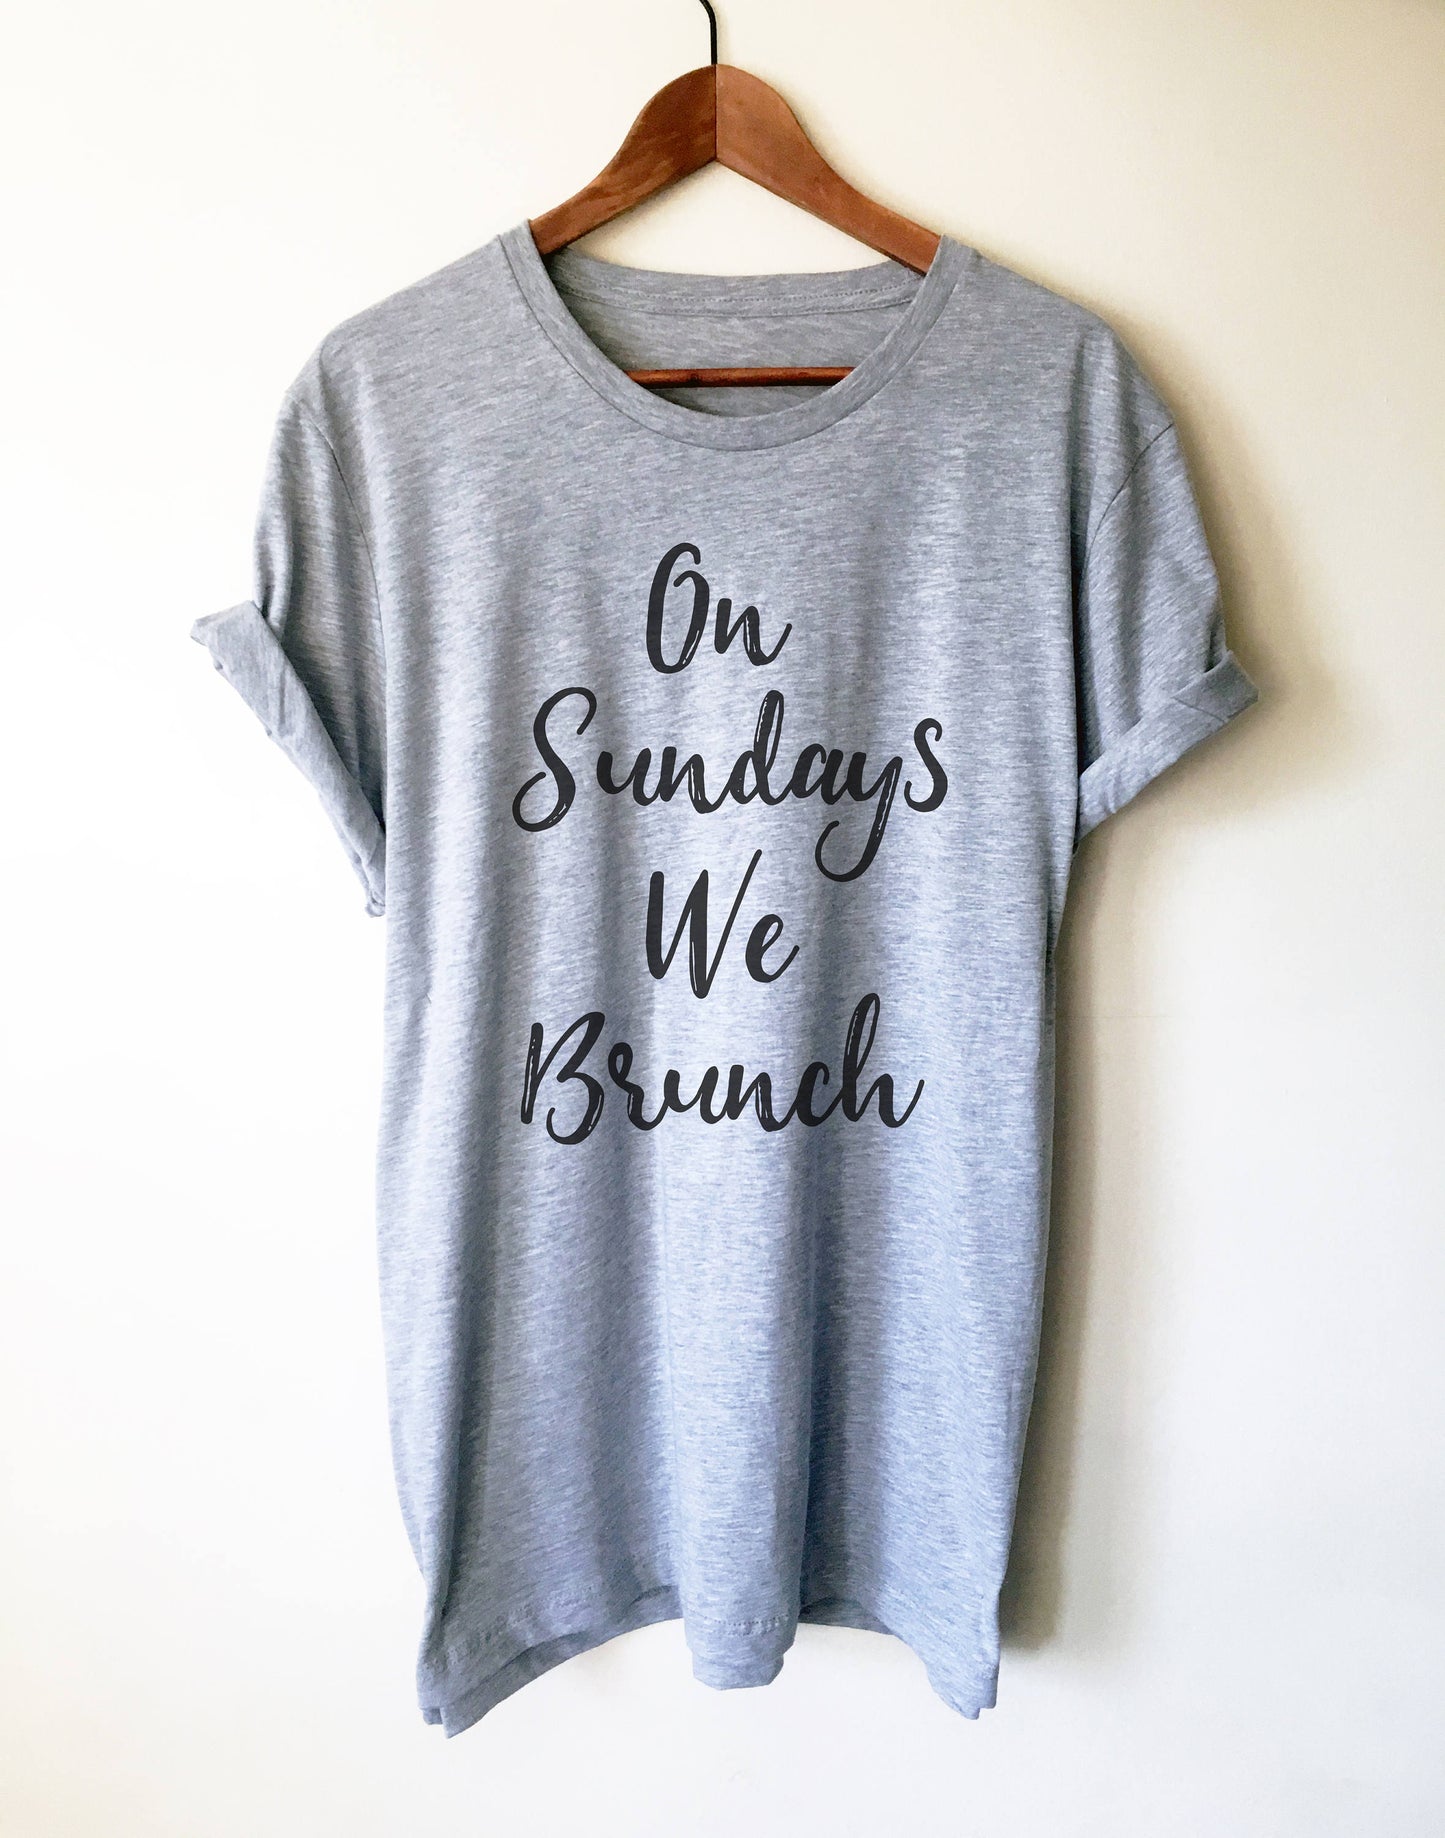 On Sundays We Brunch Unisex Shirt - Brunch shirt | Sunday brunch shirt | Brunch and bubbly | Funny brunch shirt | Breakfast shirt